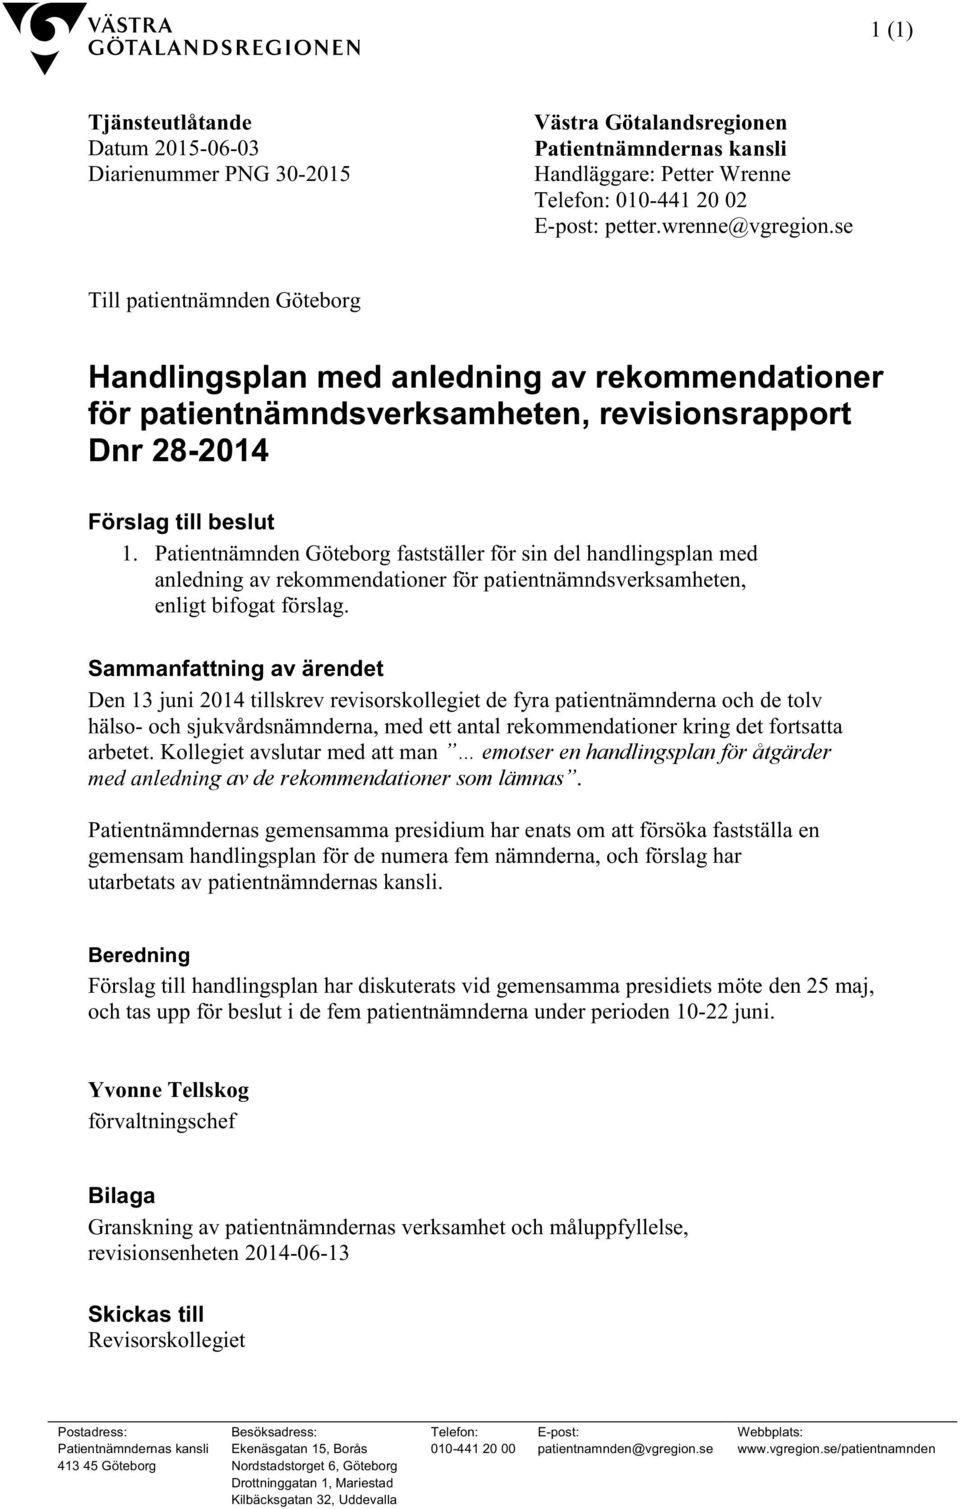 Patientnämnden Göteborg fastställer för sin del handlingsplan med anledning av rekommendationer för patientnämndsverksamheten, enligt bifogat förslag.